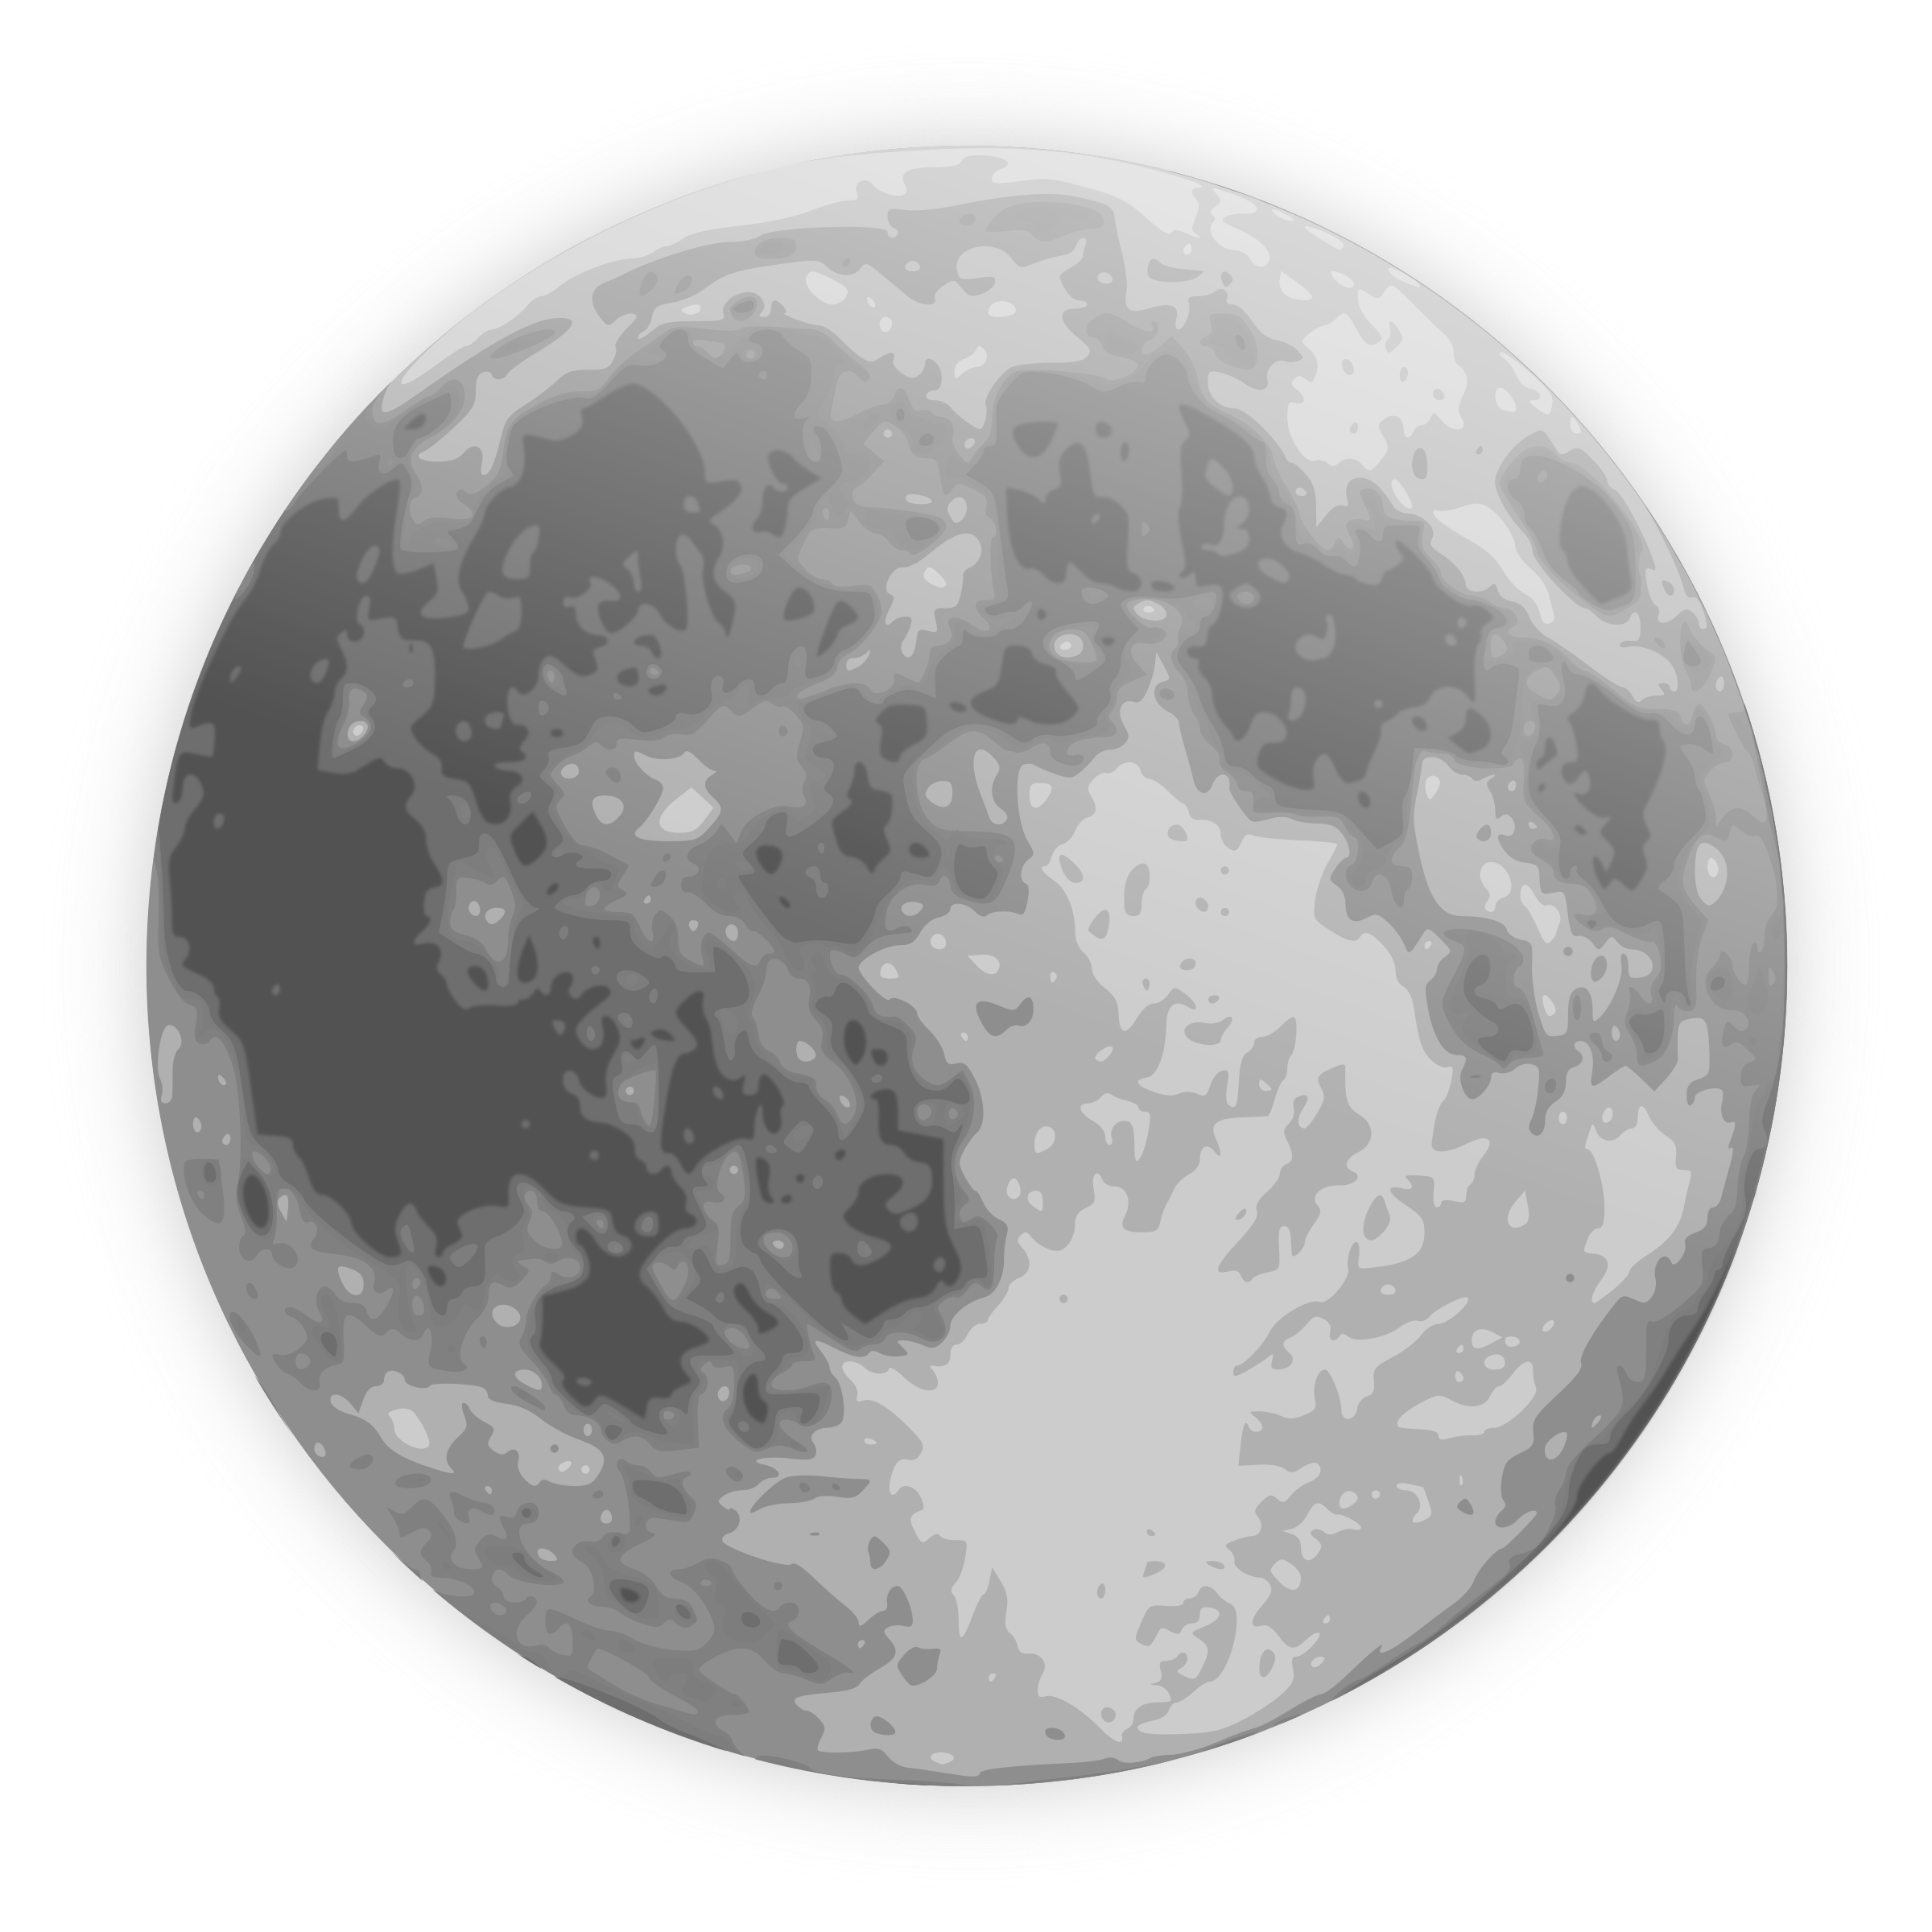 Bulan